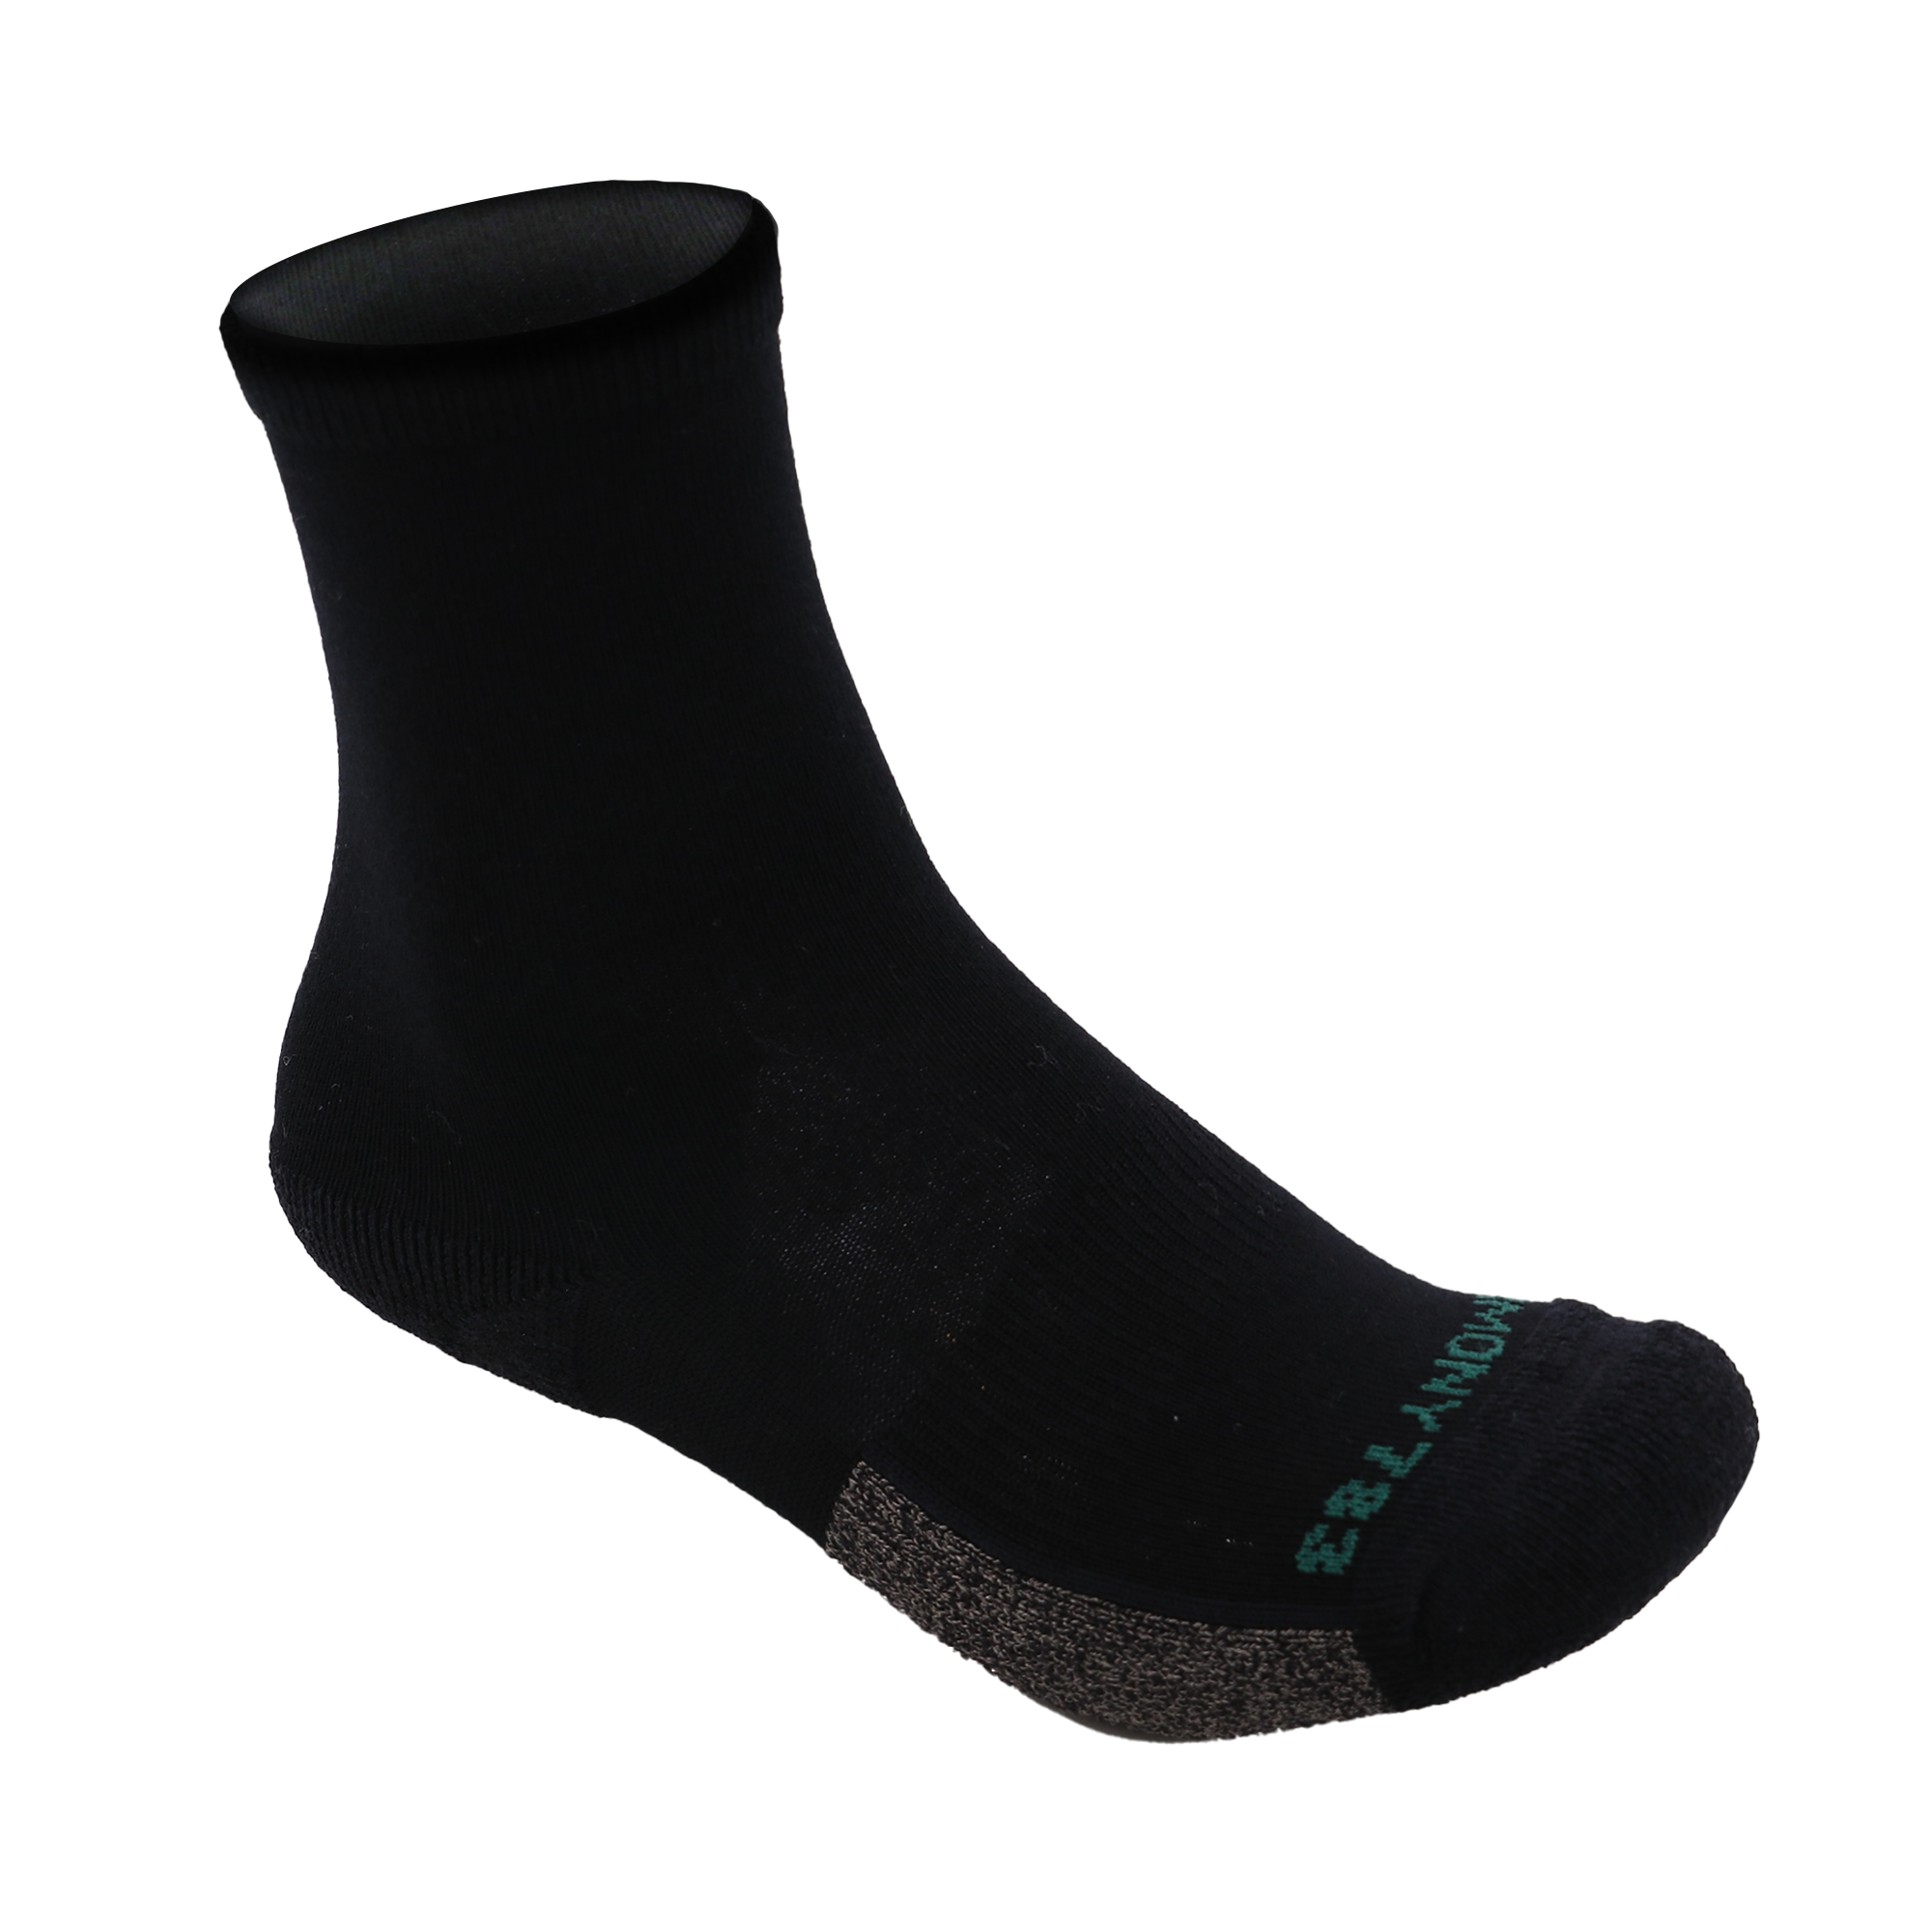 Grounding Crew Socks • Black Merino Wool